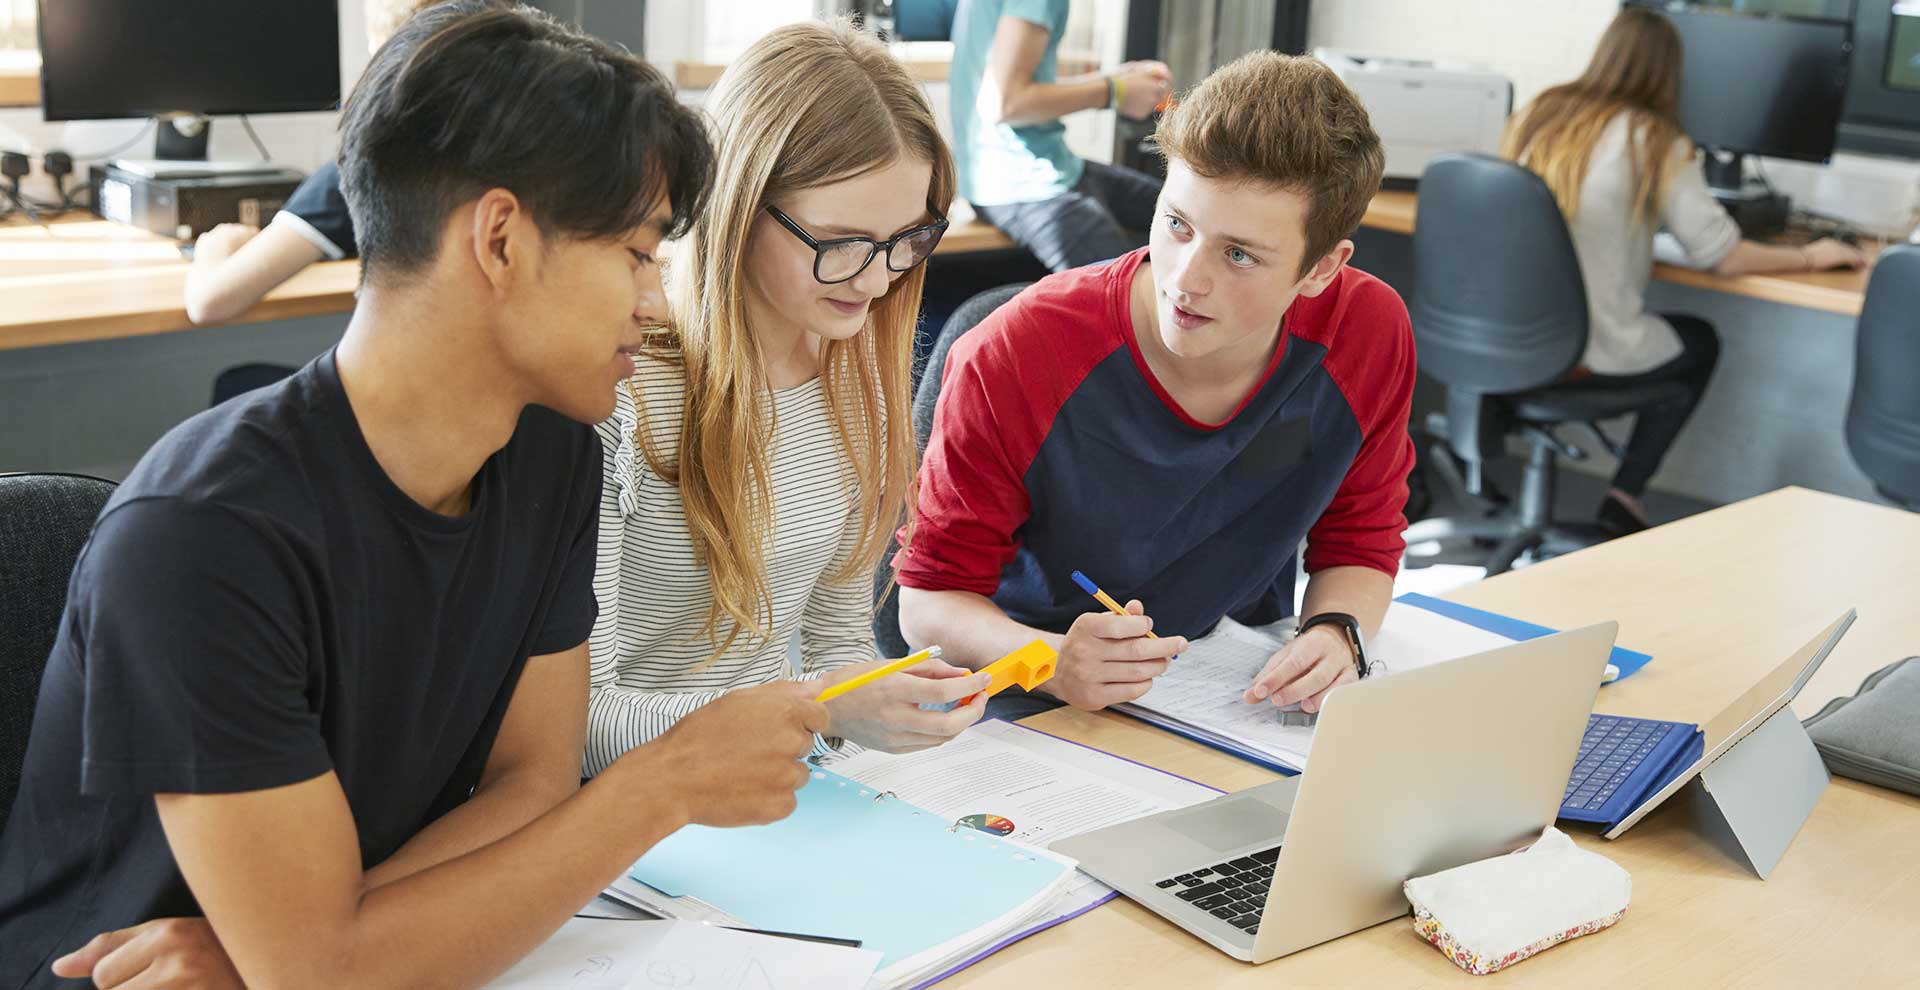 Drei jugednliche Schüler und Schülerinnen sitzen gemeinsam in einem Klassenzimmer vor einem Laptop und diskutieren.